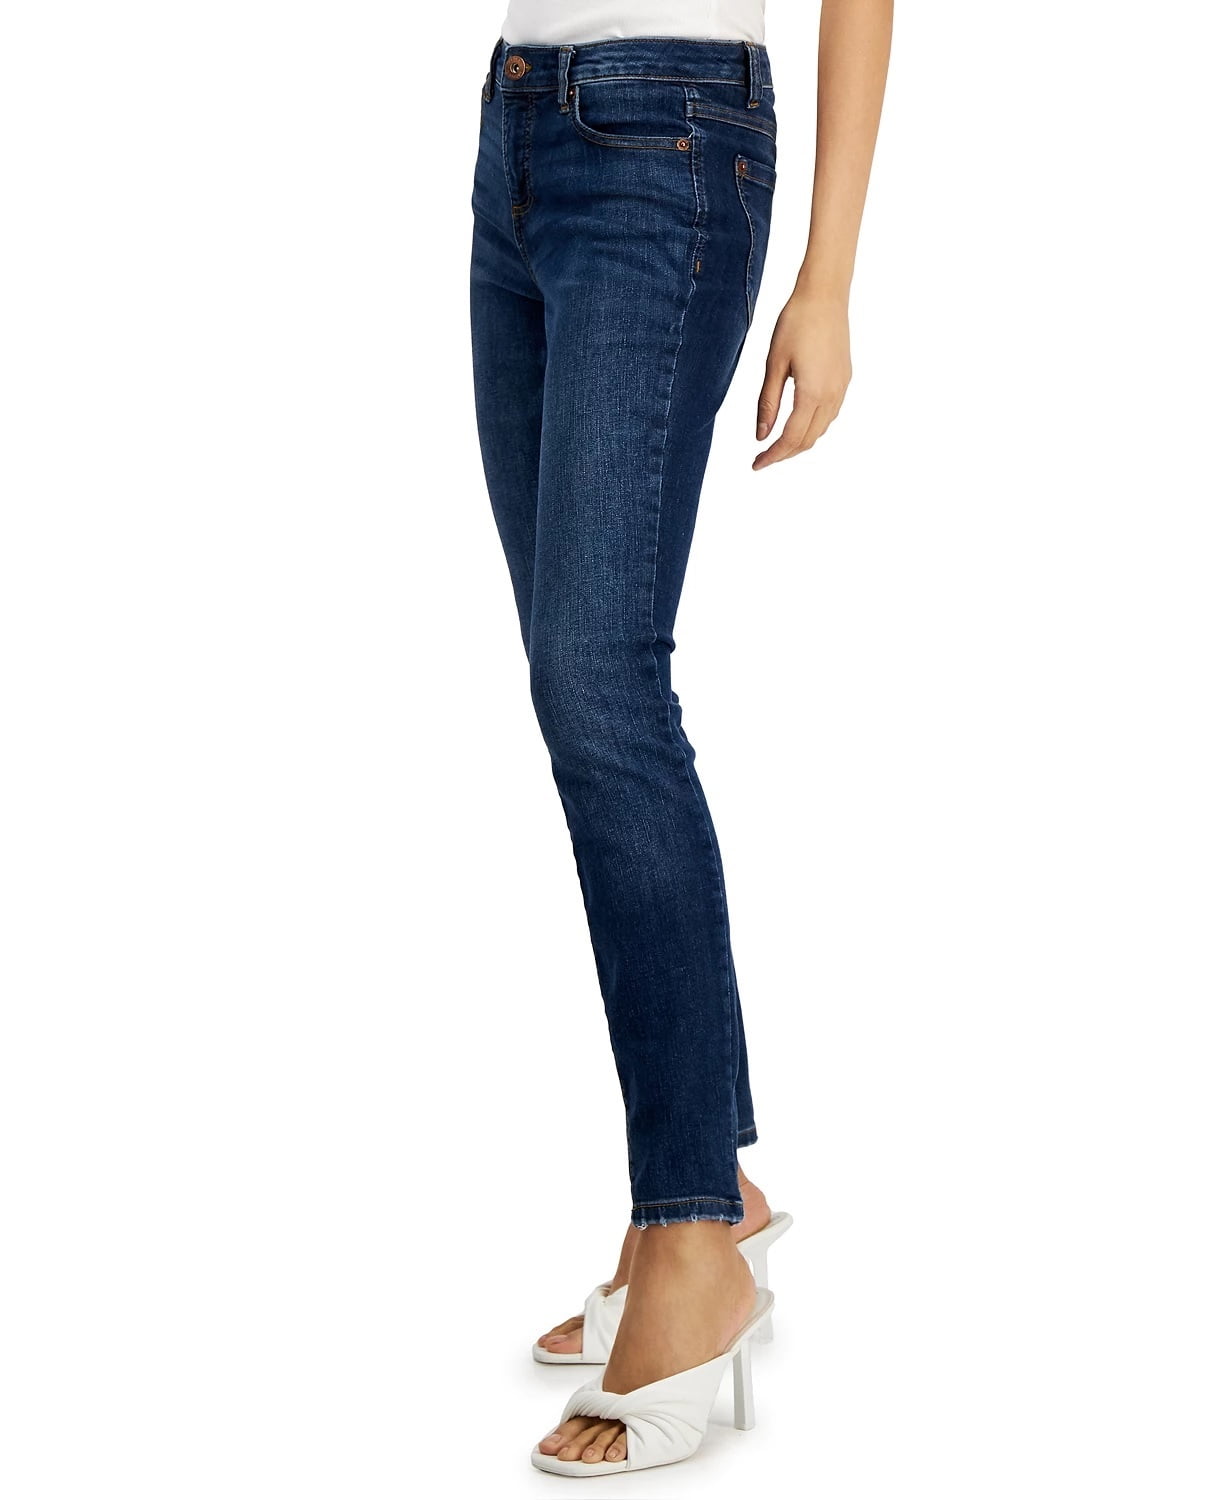 Bløde fødder komplikationer Mentor INC International Concepts Women's Madison Skinny Jeans Blue Size 6 -  Walmart.com